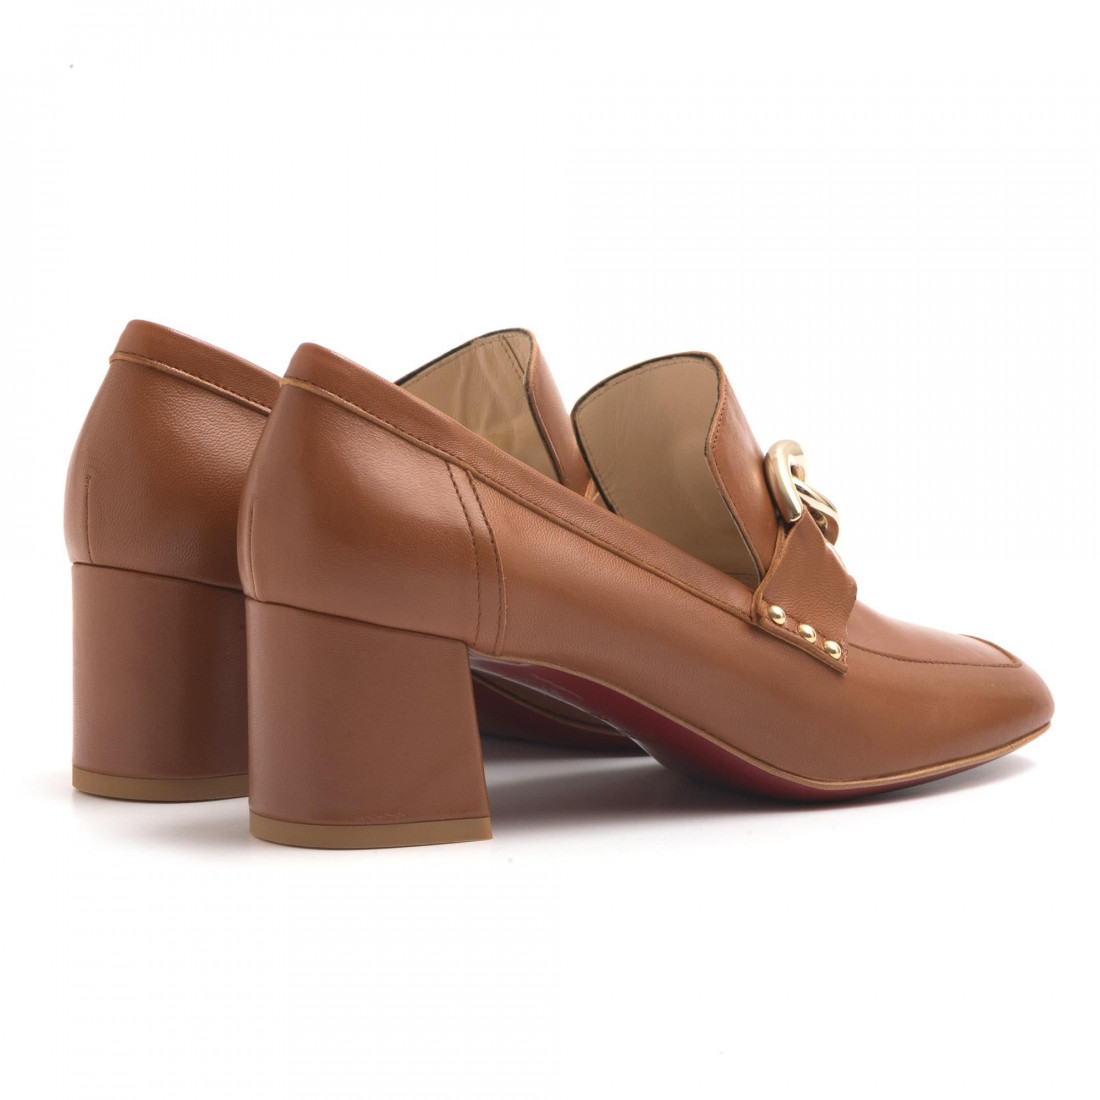 Medium heel mocassins in soft cuir leather